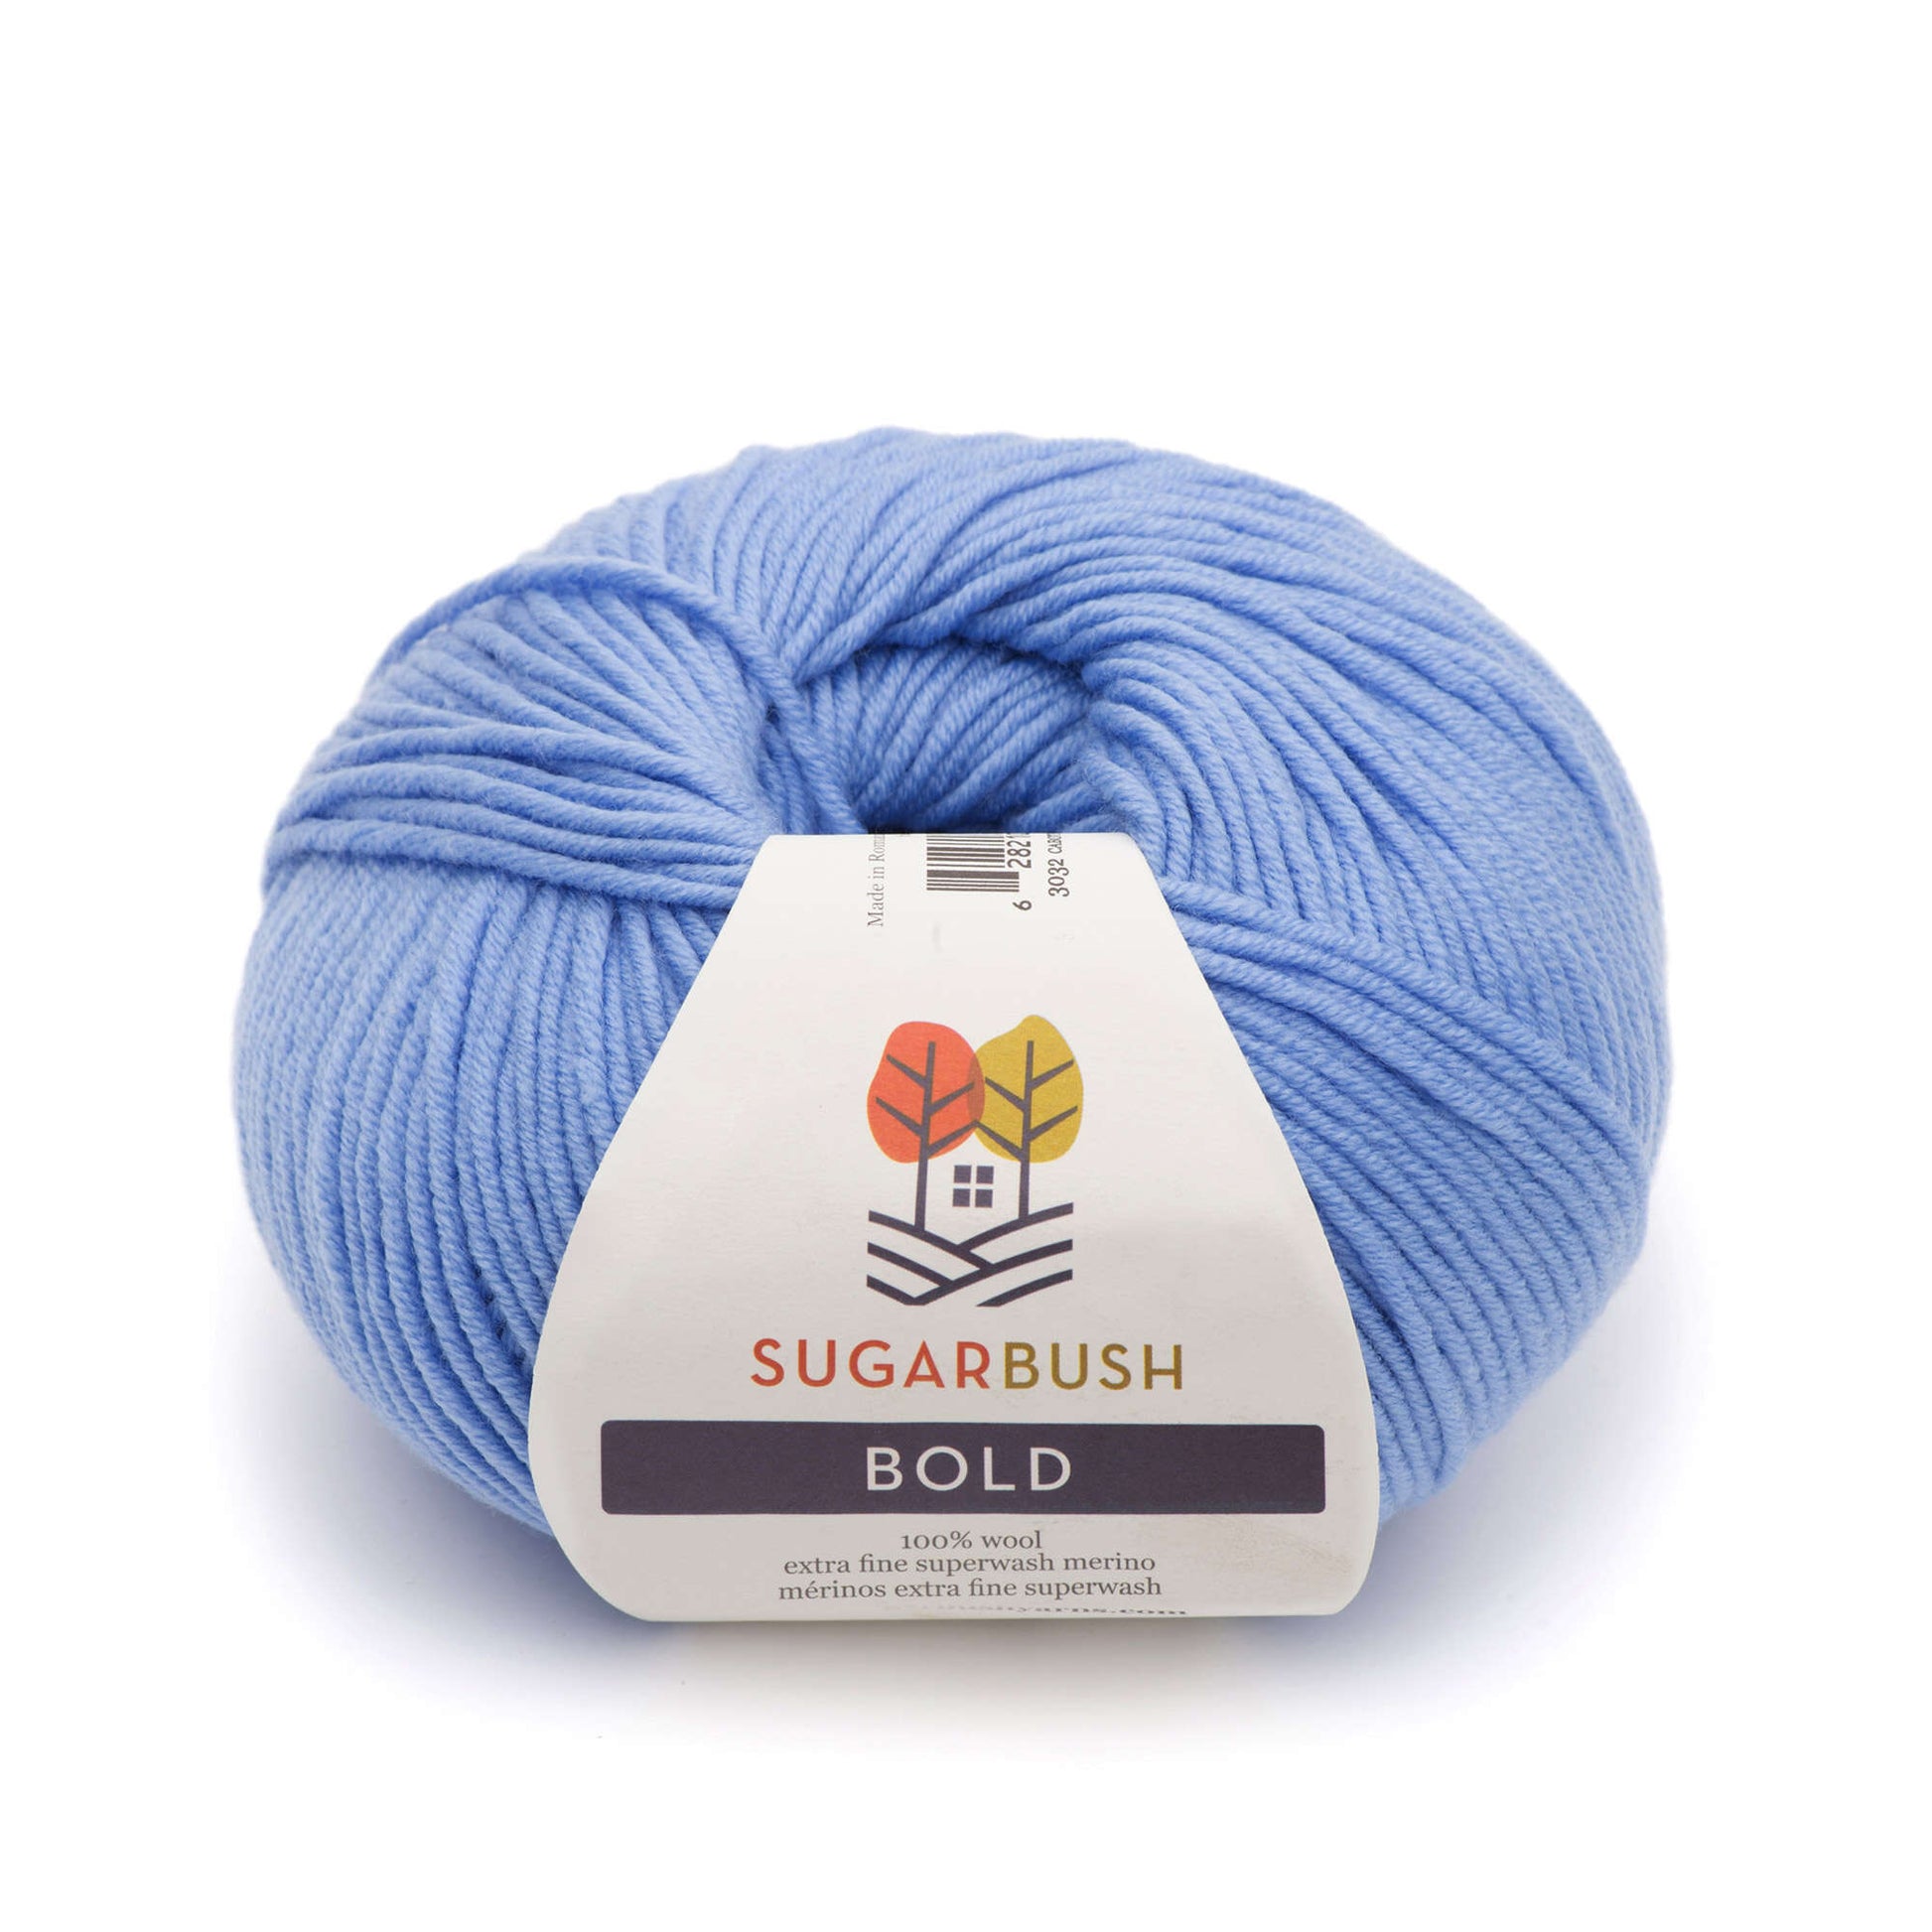 Sugar Bush Bold Yarn - Discontinued Cabot Blue